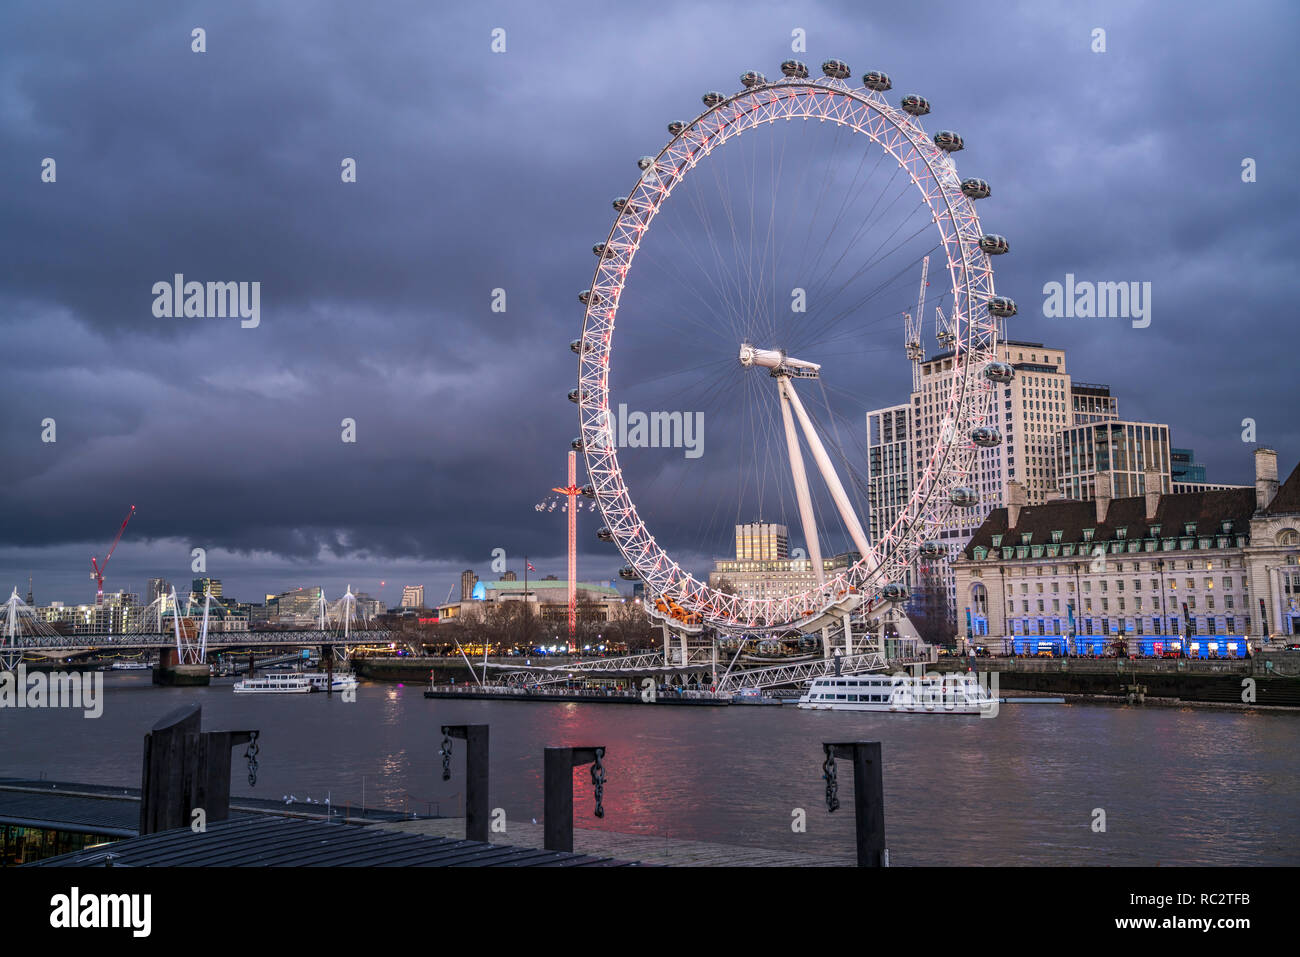 Riesenrad Das in der Abenddämmerung London Eye, Londres, Vereinigtes Königreich Großbritannien, Europa | la noria London Eye al anochecer, Londres, Grea Foto de stock